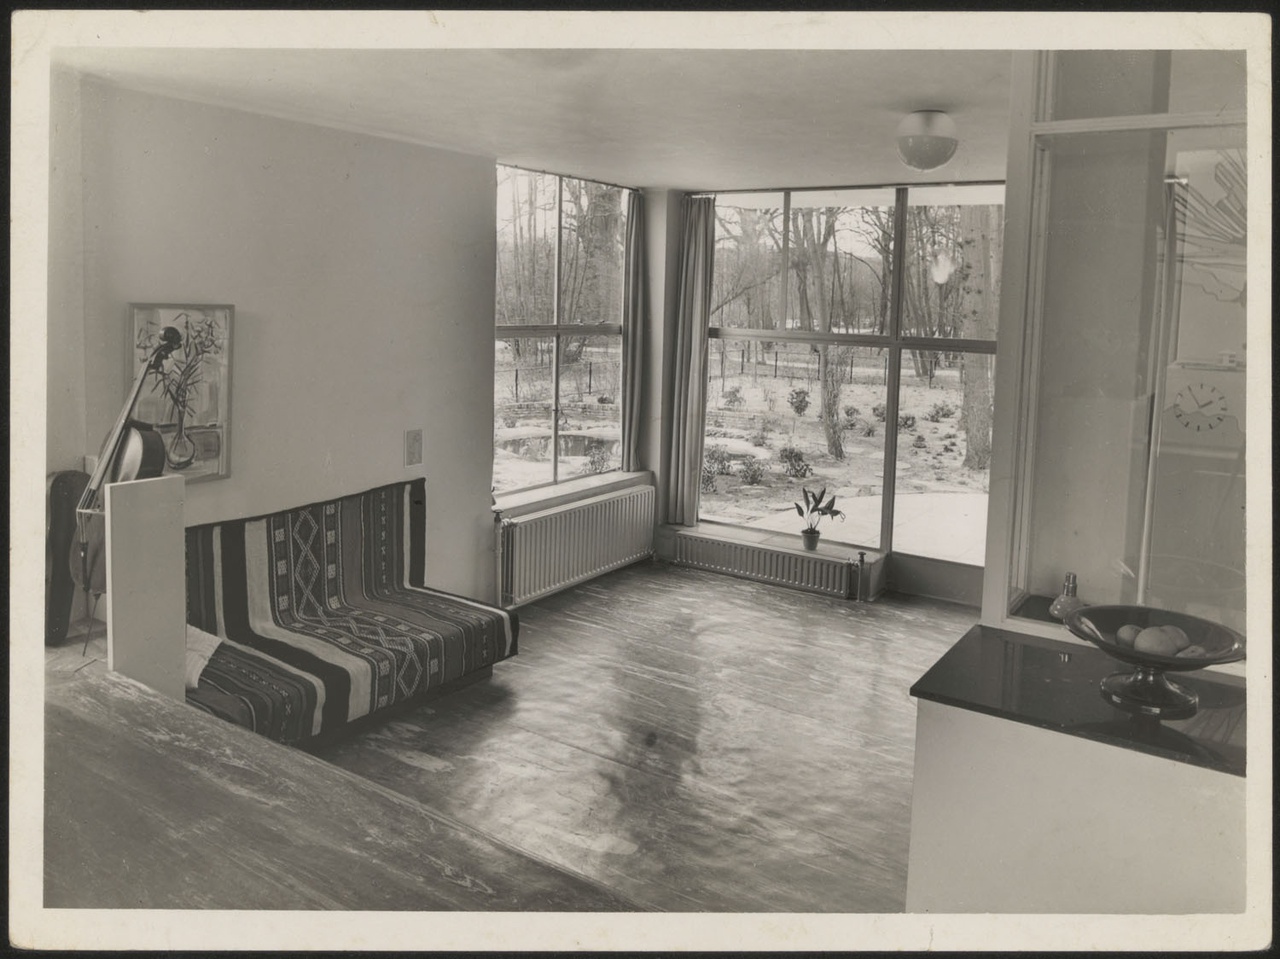 Afbeelding van woning Hillebrand, interieur woonkamer met hoekramen zonder losse meubels